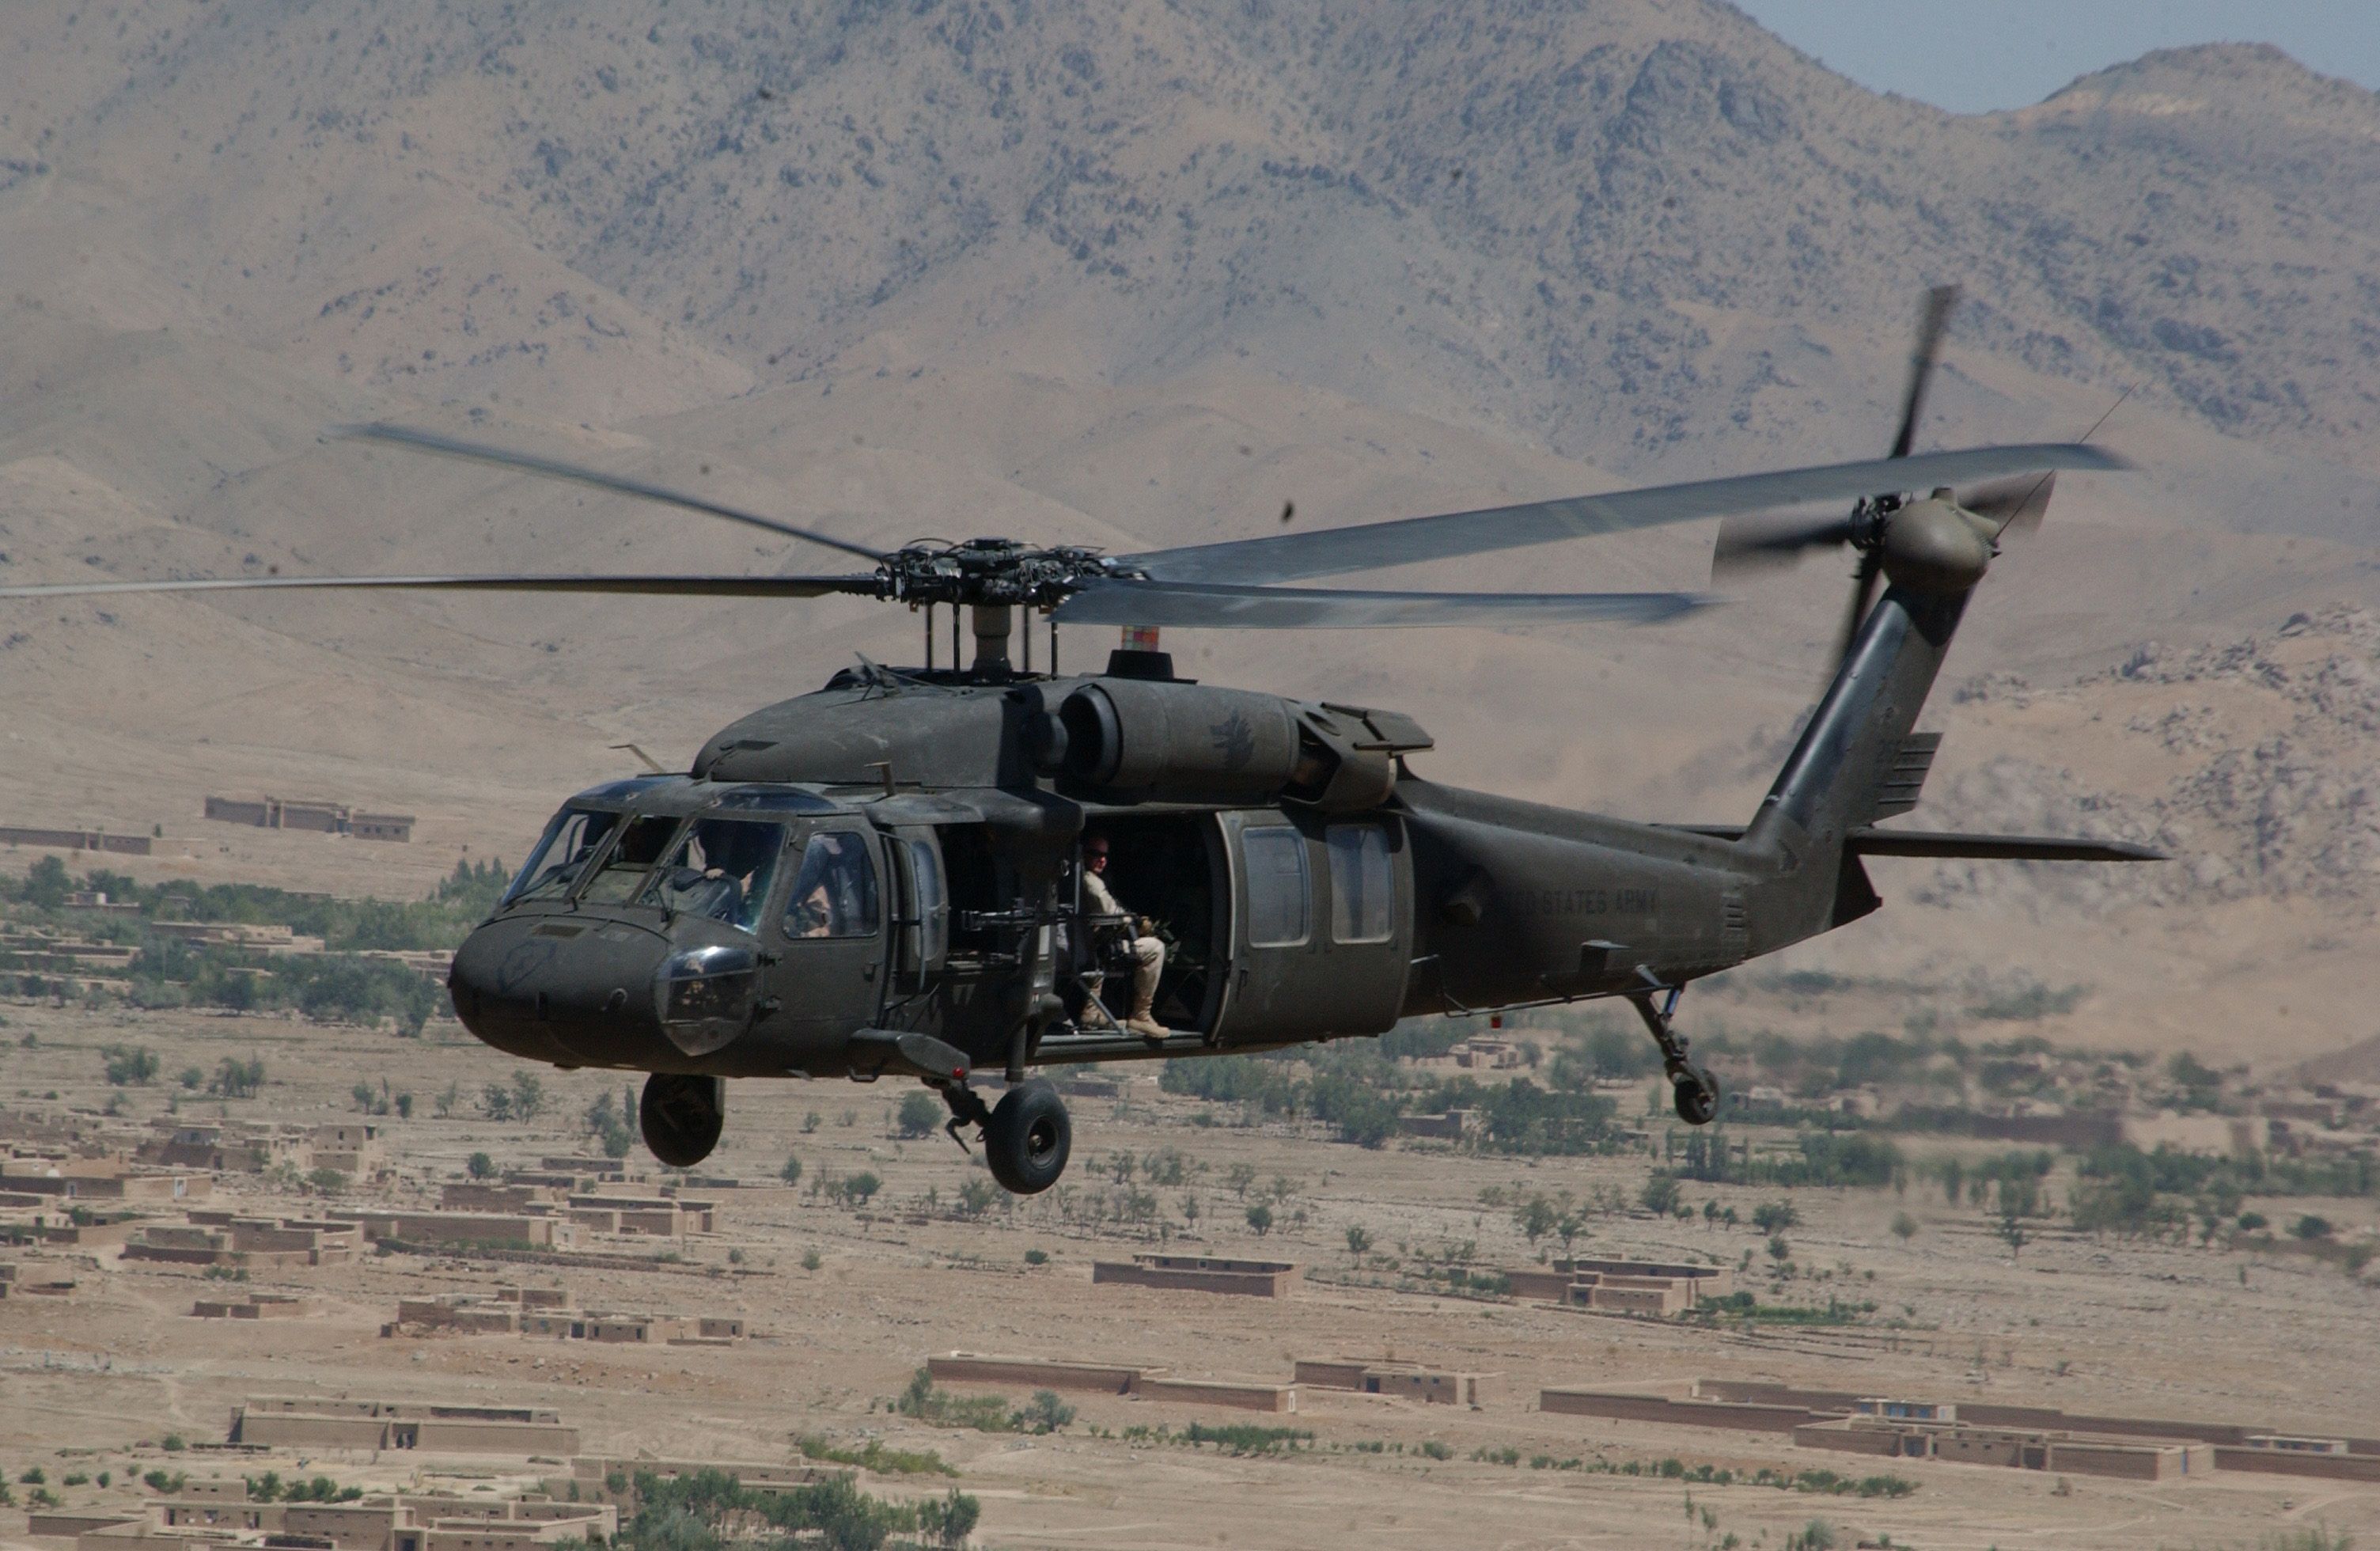 Un helicóptero Black Hawk transporta soldados desde Bagram Airfield a Ghazni, Afganistán, en julio de 2004. De Staff Sgt. Vernell Hall, U.S. Army - Esta imagen ha sido realizada por el Ejército de Estados Unidos con el número identificatorio 040726-A-1300H-038. Dominio público, https://commons.wikimedia.org/w/index.php?curid=20801658